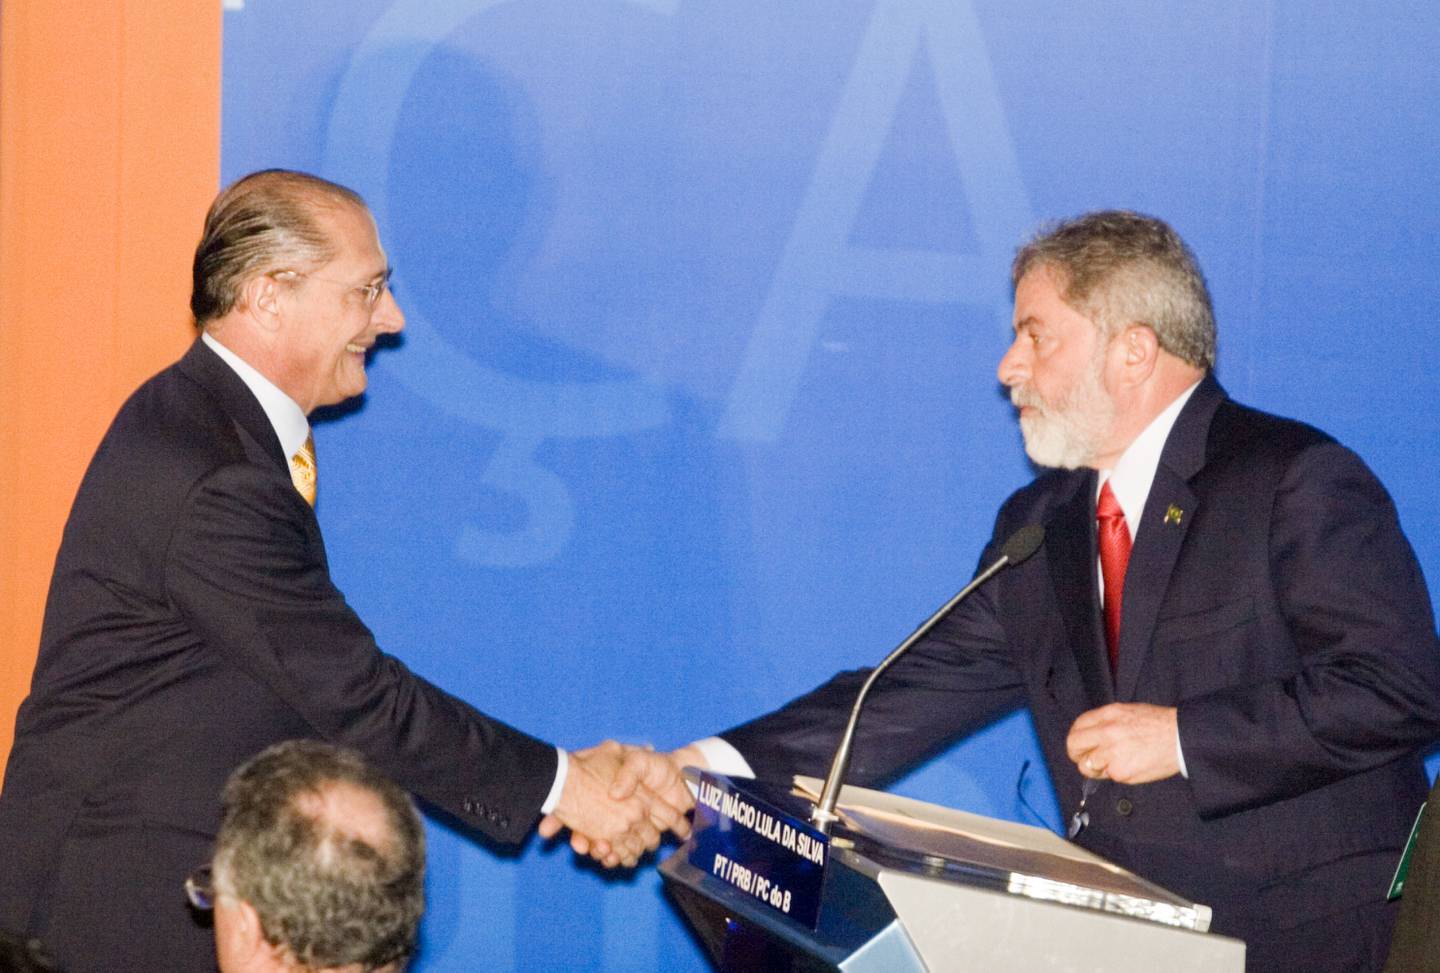 De 2006: el expresidente brasileño Luiz Inacio Lula da Silva, a la derecha, le da la mano a Geraldo Alckmin Filho, exgobernador de São Paulo, a la izquierda, durante un debate presidencial televisado en São Paulo, Brasil, el domingo 8 de octubre de 2006.Fotógrafo: Marcos Issa/ Bloomberg News .dfd